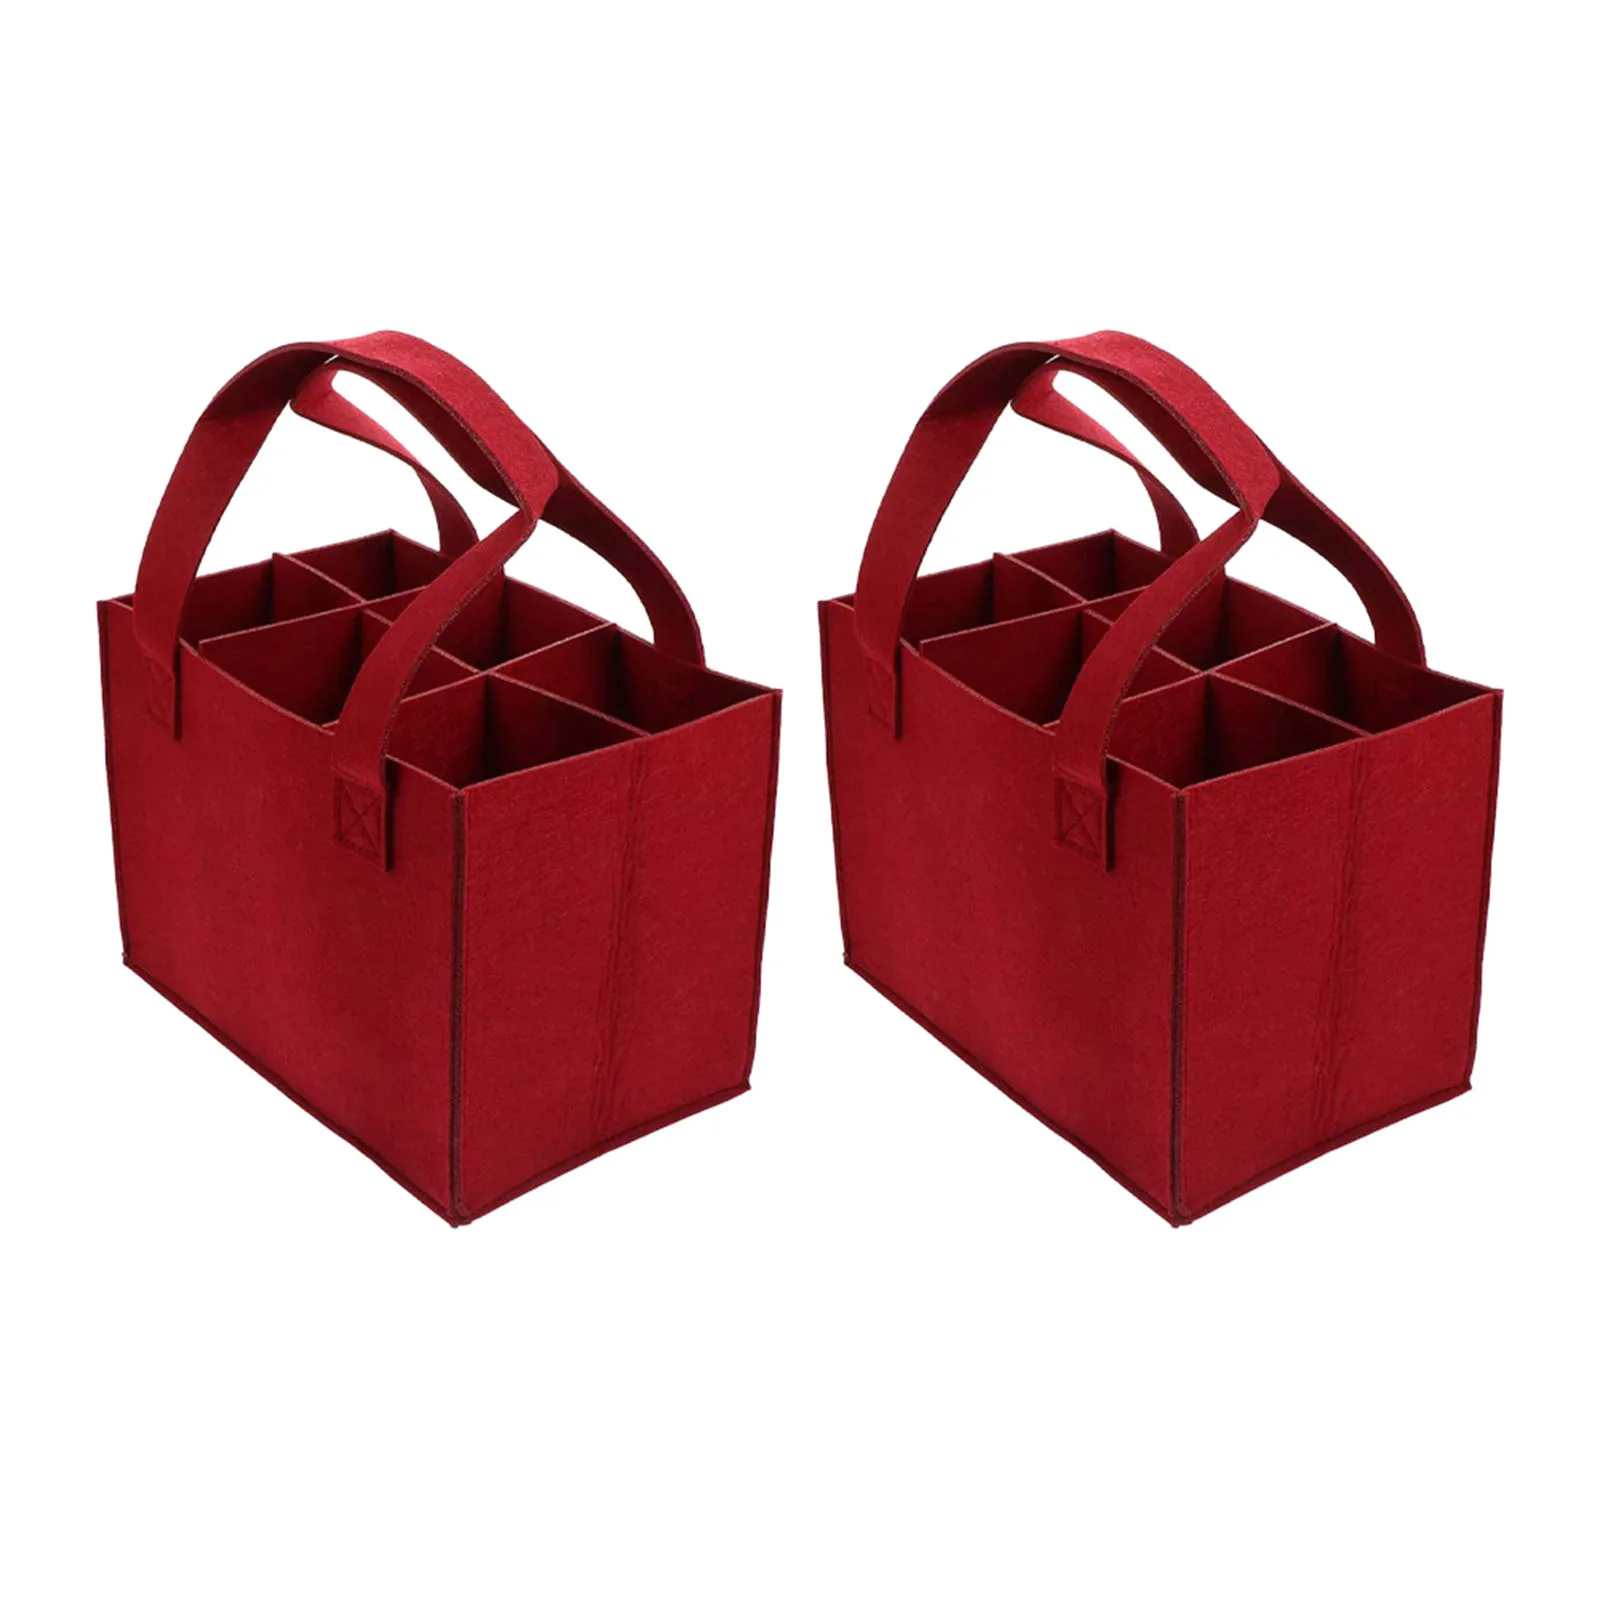 

Стильная красная сумка для бутылок, 2 шт., прочный войлочный материал защищает 6 бутылок, легко носить с собой, идеальный подарок для любителей вина